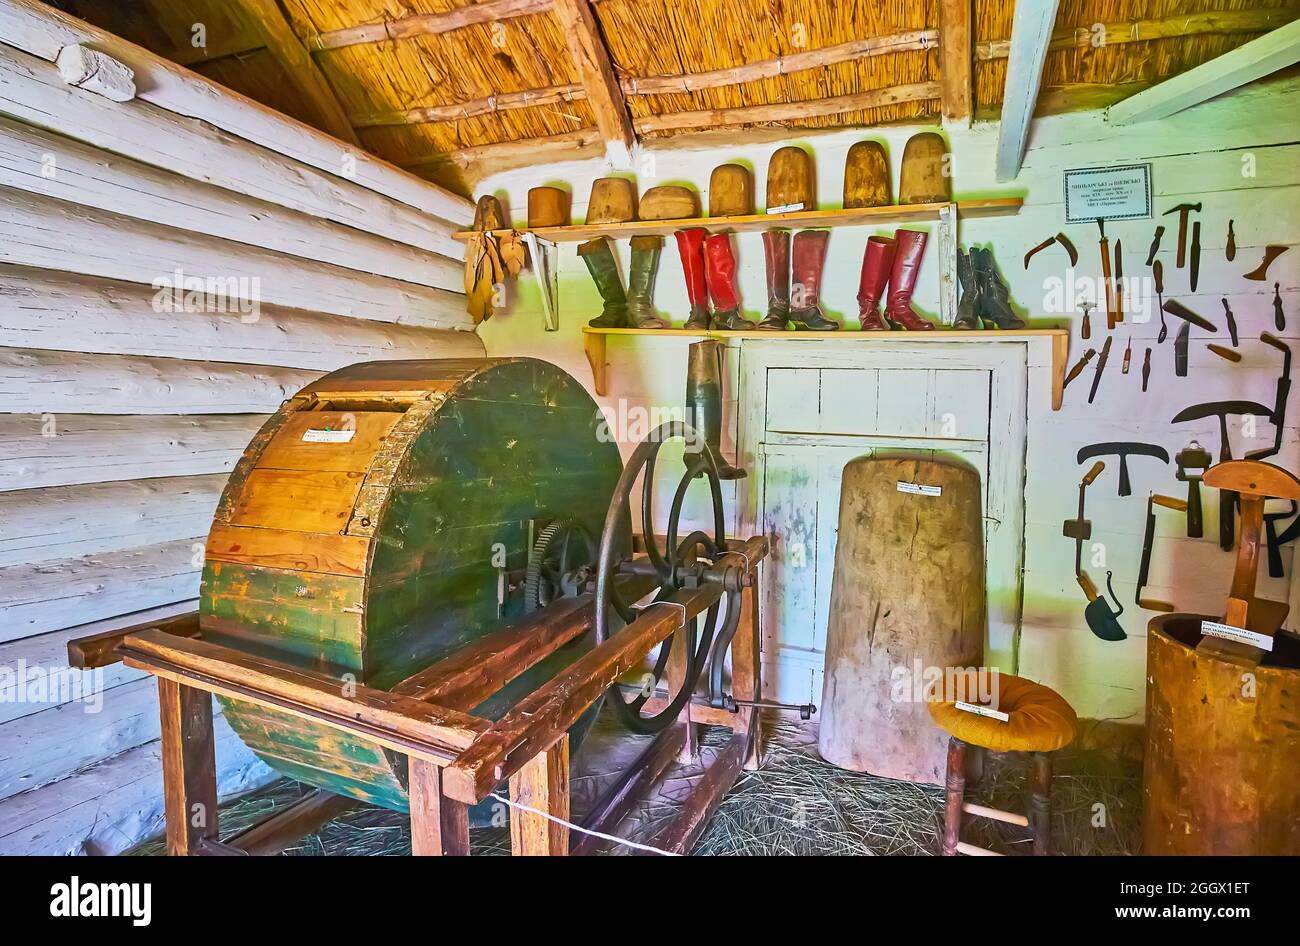 PEREIASLAV, UCRAINA - 22 MAGGIO 2021: Il laboratorio medievale di conceria con tamburo abbronzante in pelle, strumenti per conciatori ed esempi di stivali artigianali d'epoca Foto Stock